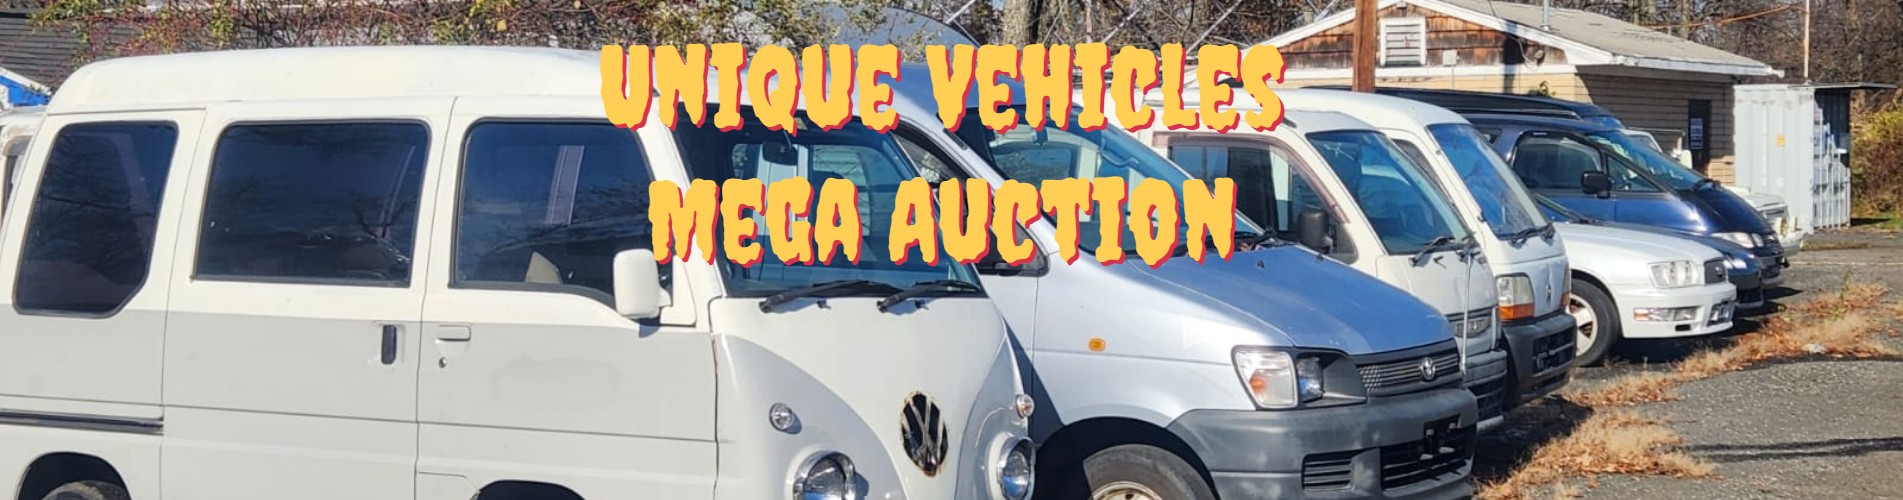 Mega auction of Japanese mini trucks, cars, vans by Unique Vehicles